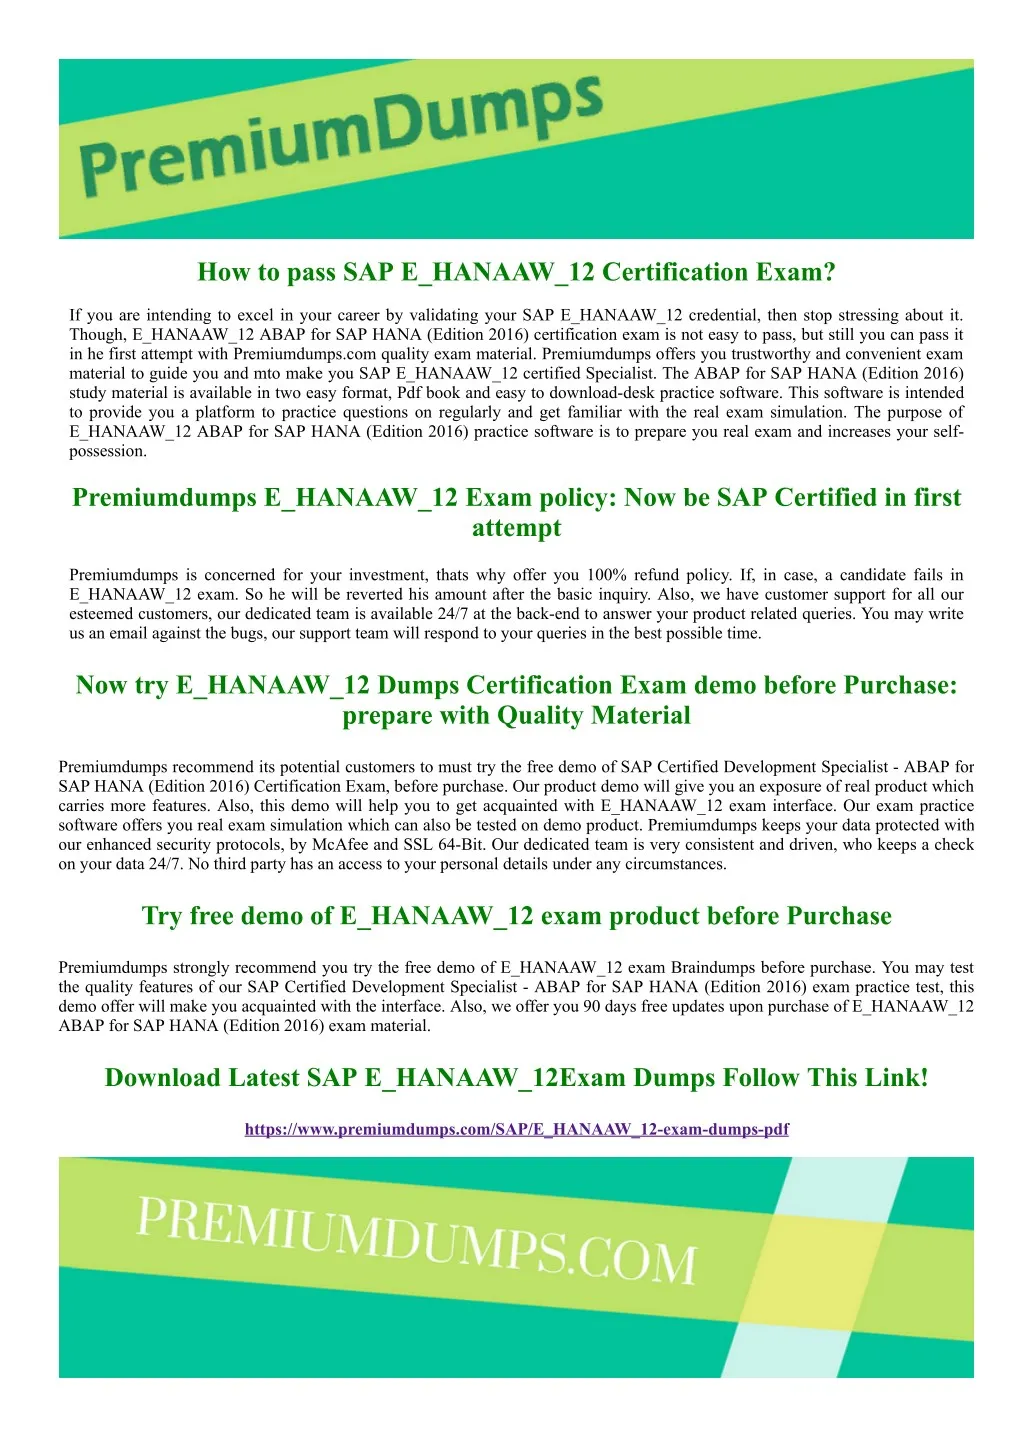 how to pass sap e hanaaw 12 certification exam